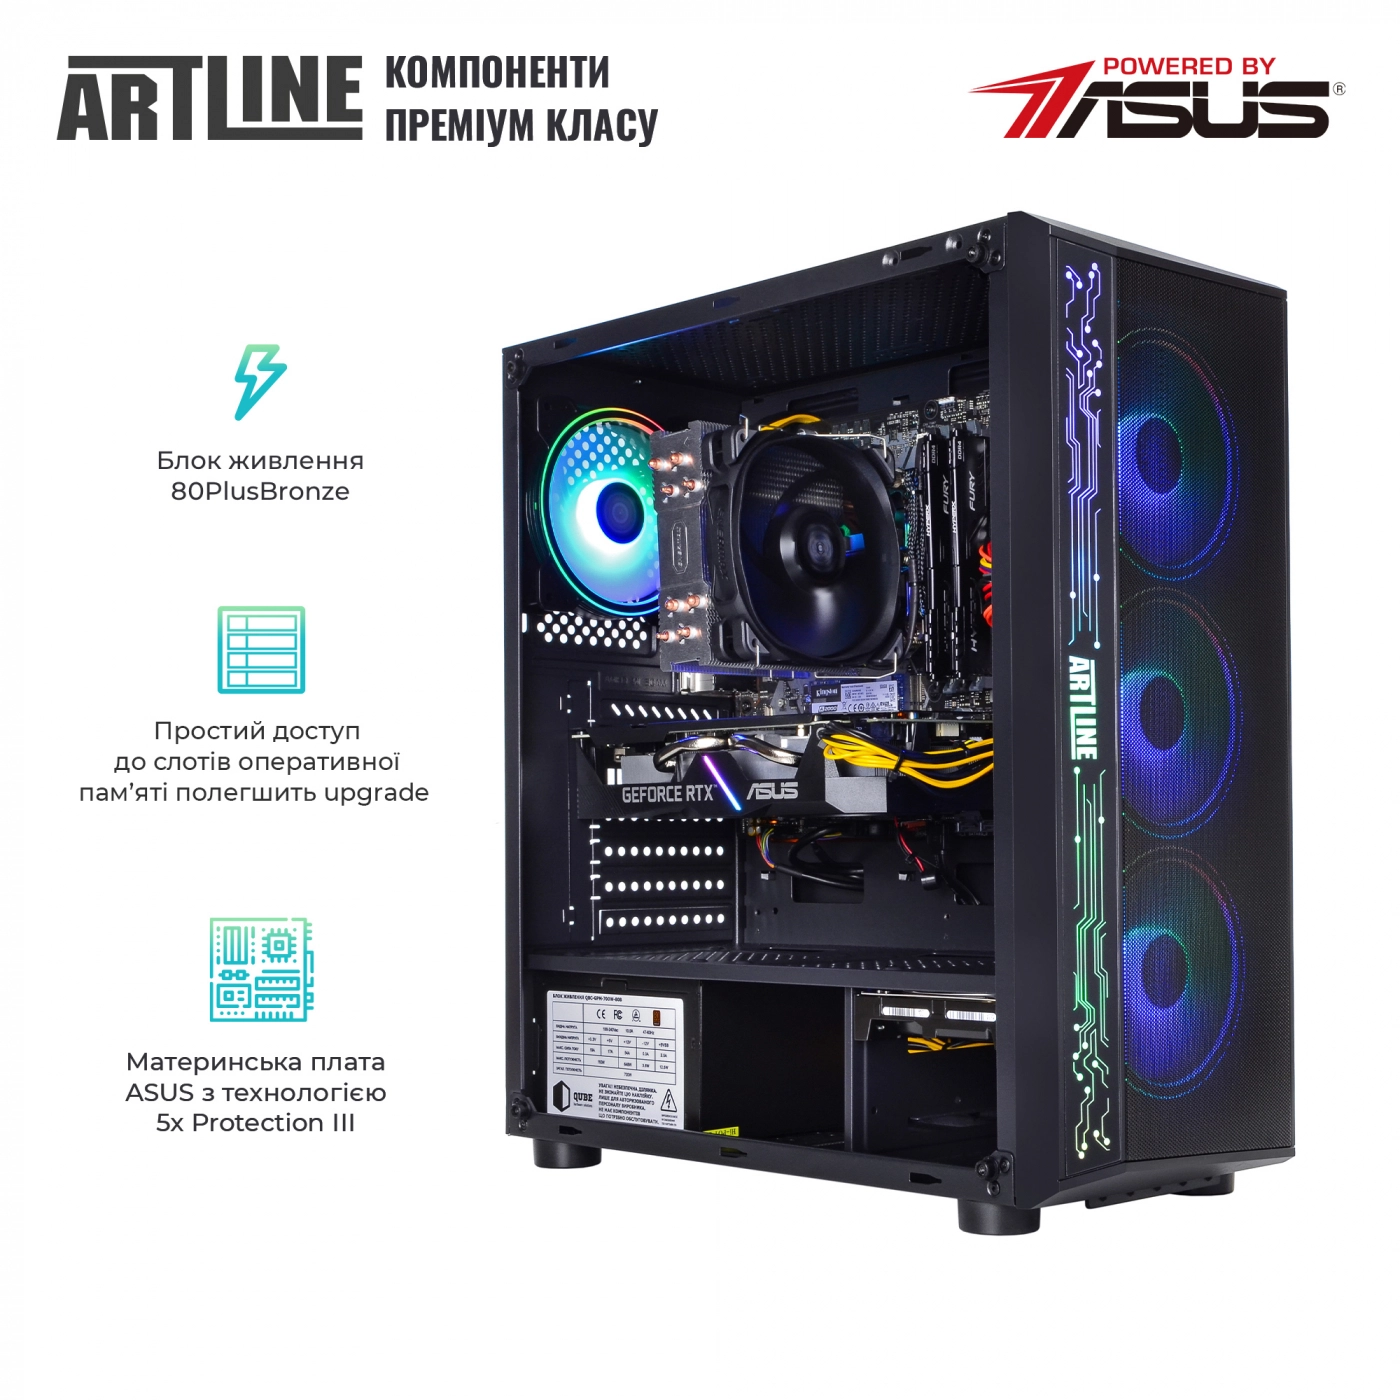 Купить Компьютер ARTLINE Gaming X77v59 - фото 3